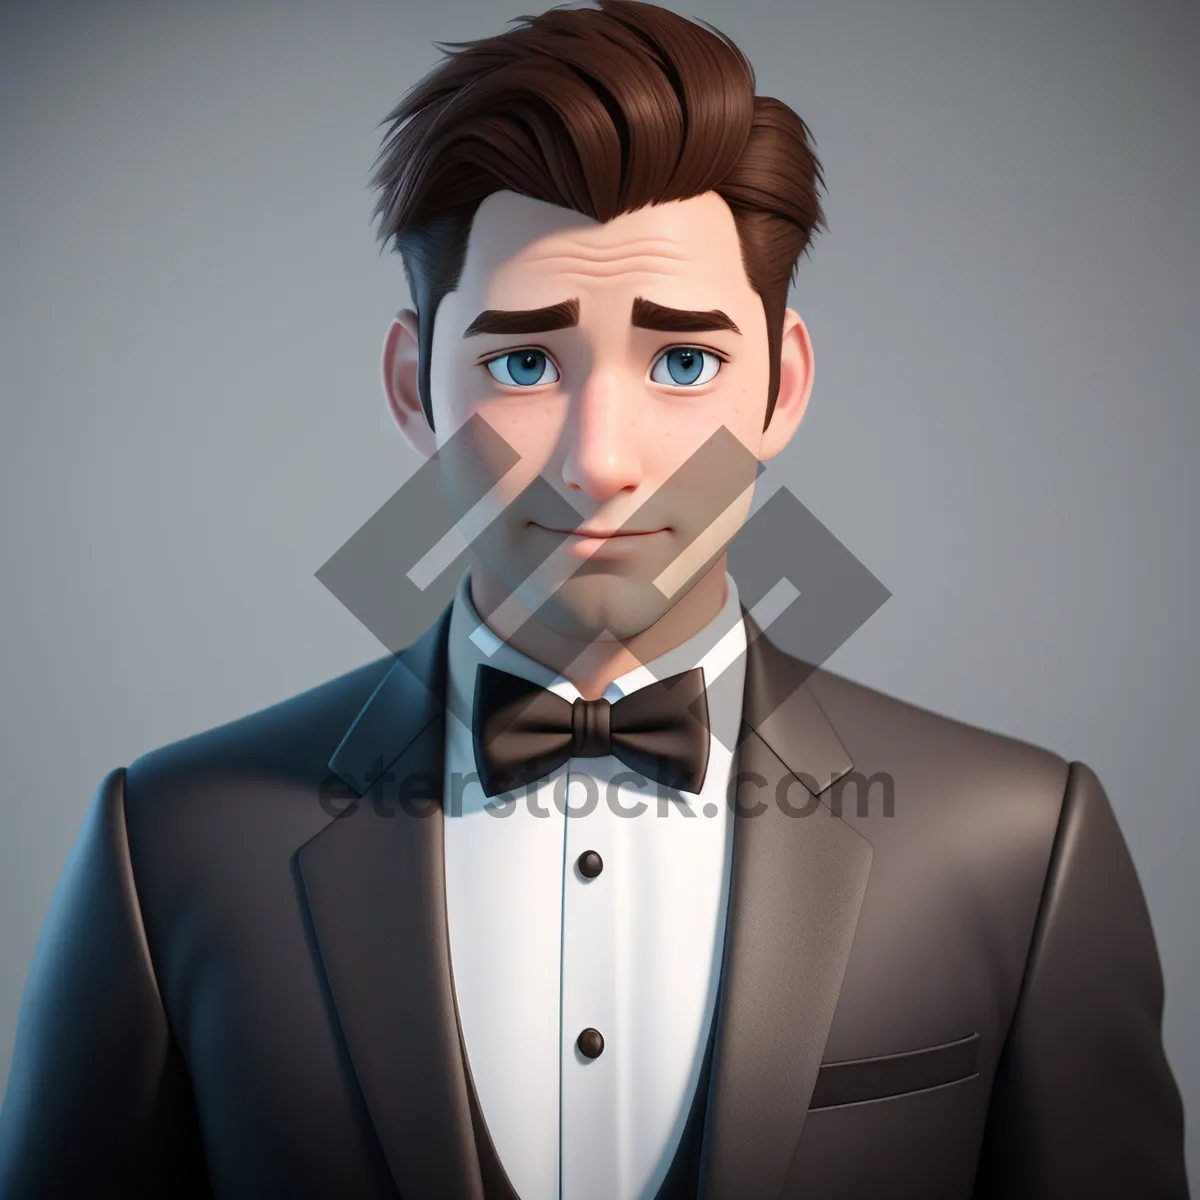 Picture of Confident businessman in elegant suit